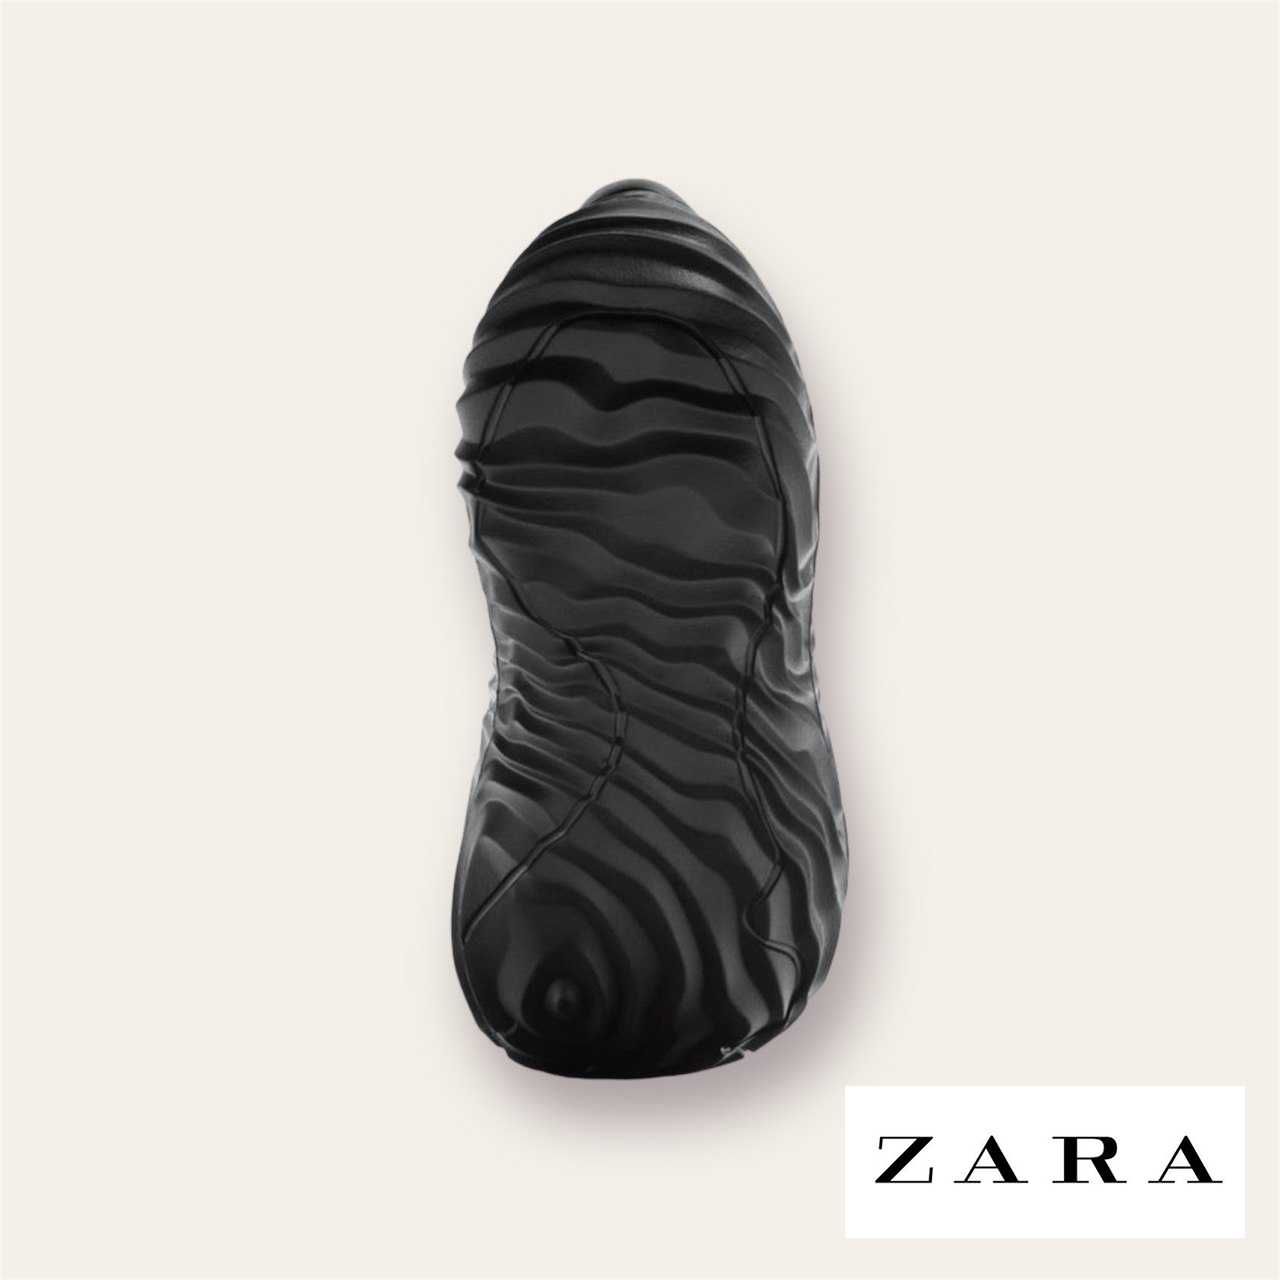 Мужские кроссовки ZARA размер 43 в наличии новые